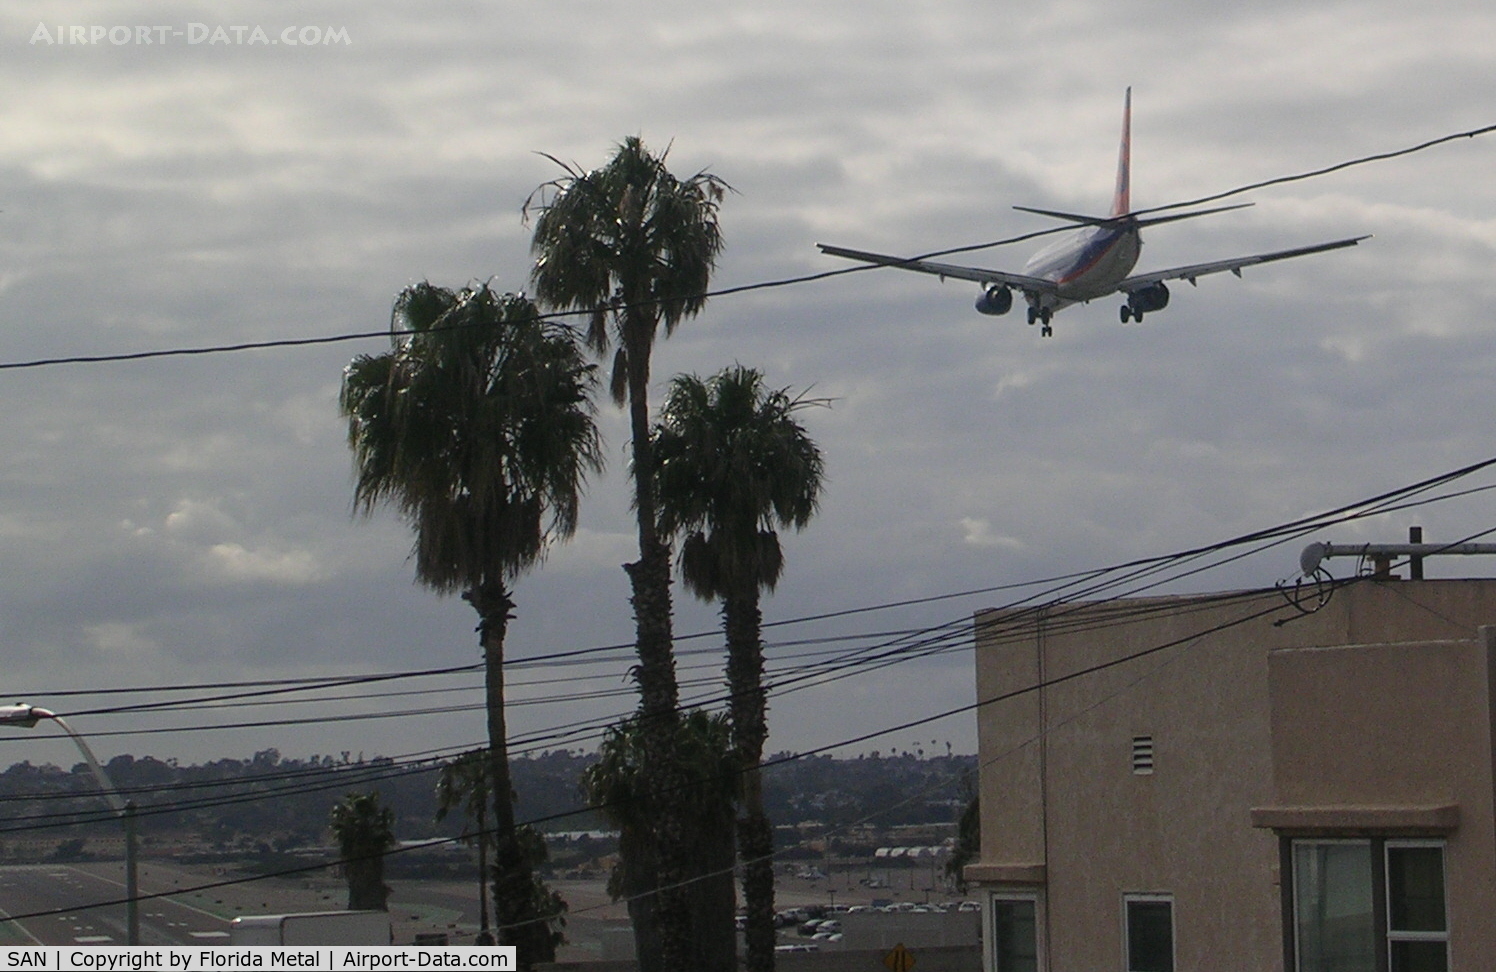 San Diego International Airport (SAN) - From the neighborhood looking down on runway